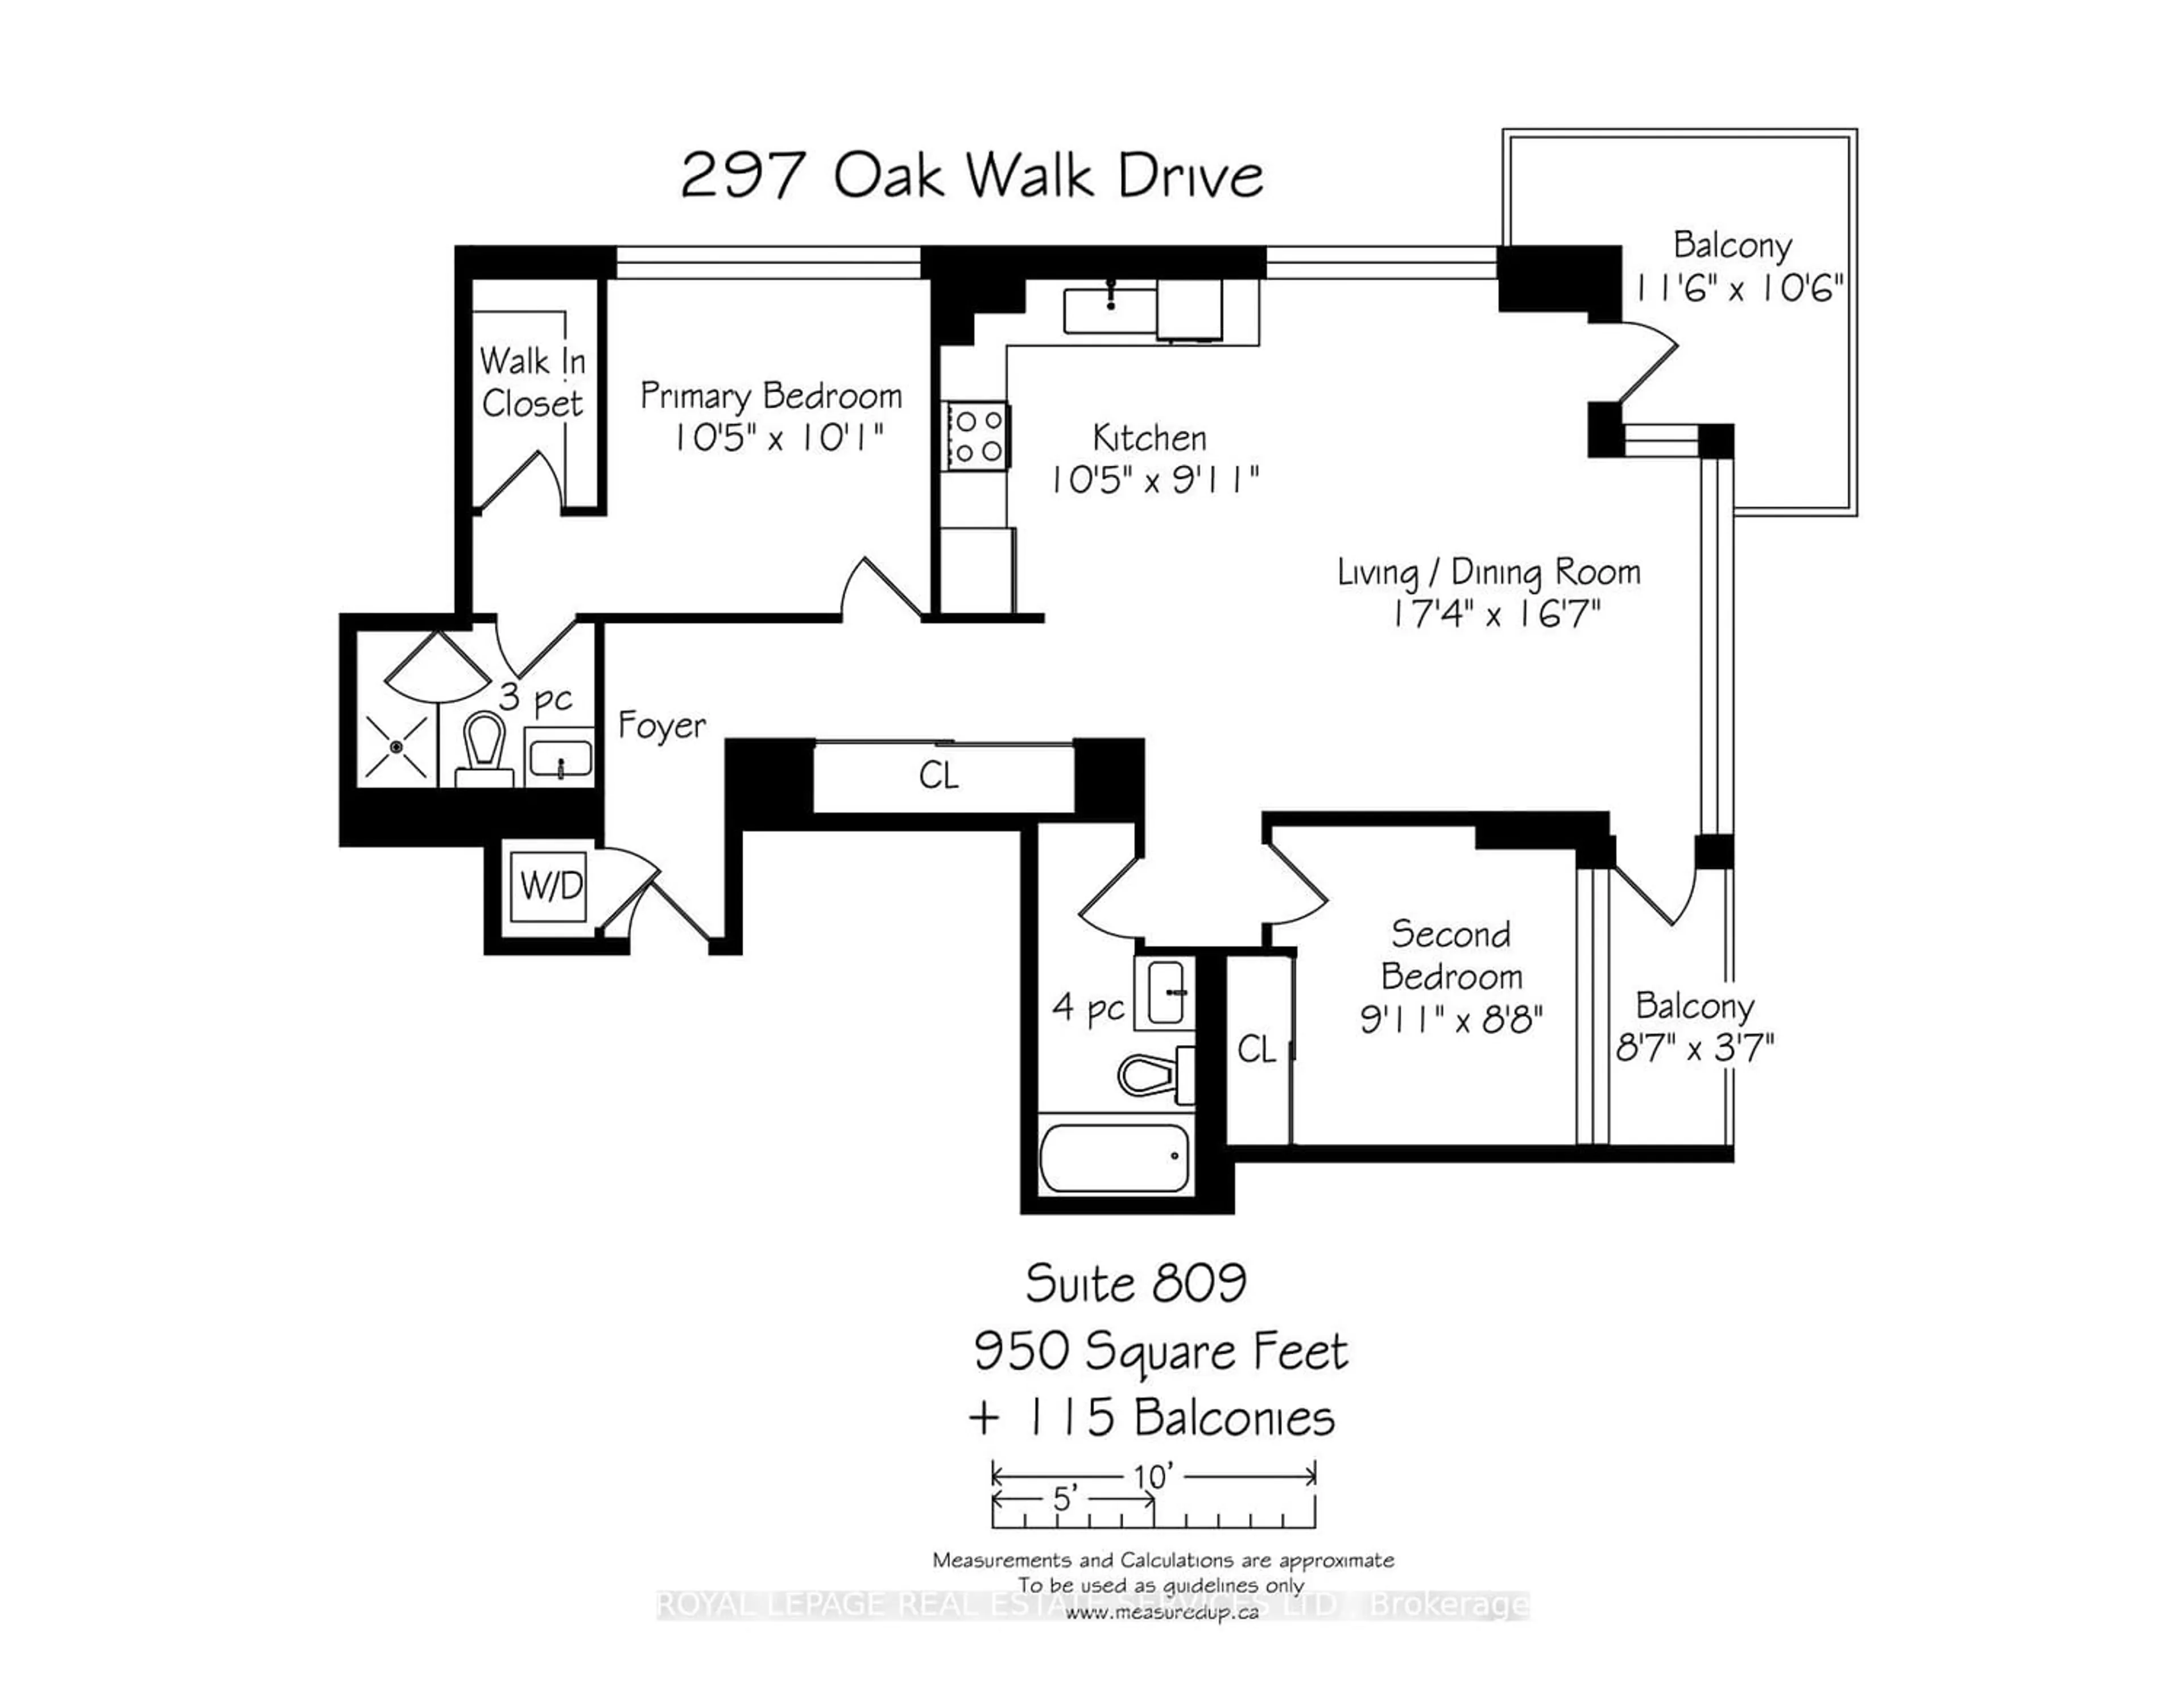 Floor plan for 297 Oak Walk Dr #809, Oakville Ontario L6H 3R6